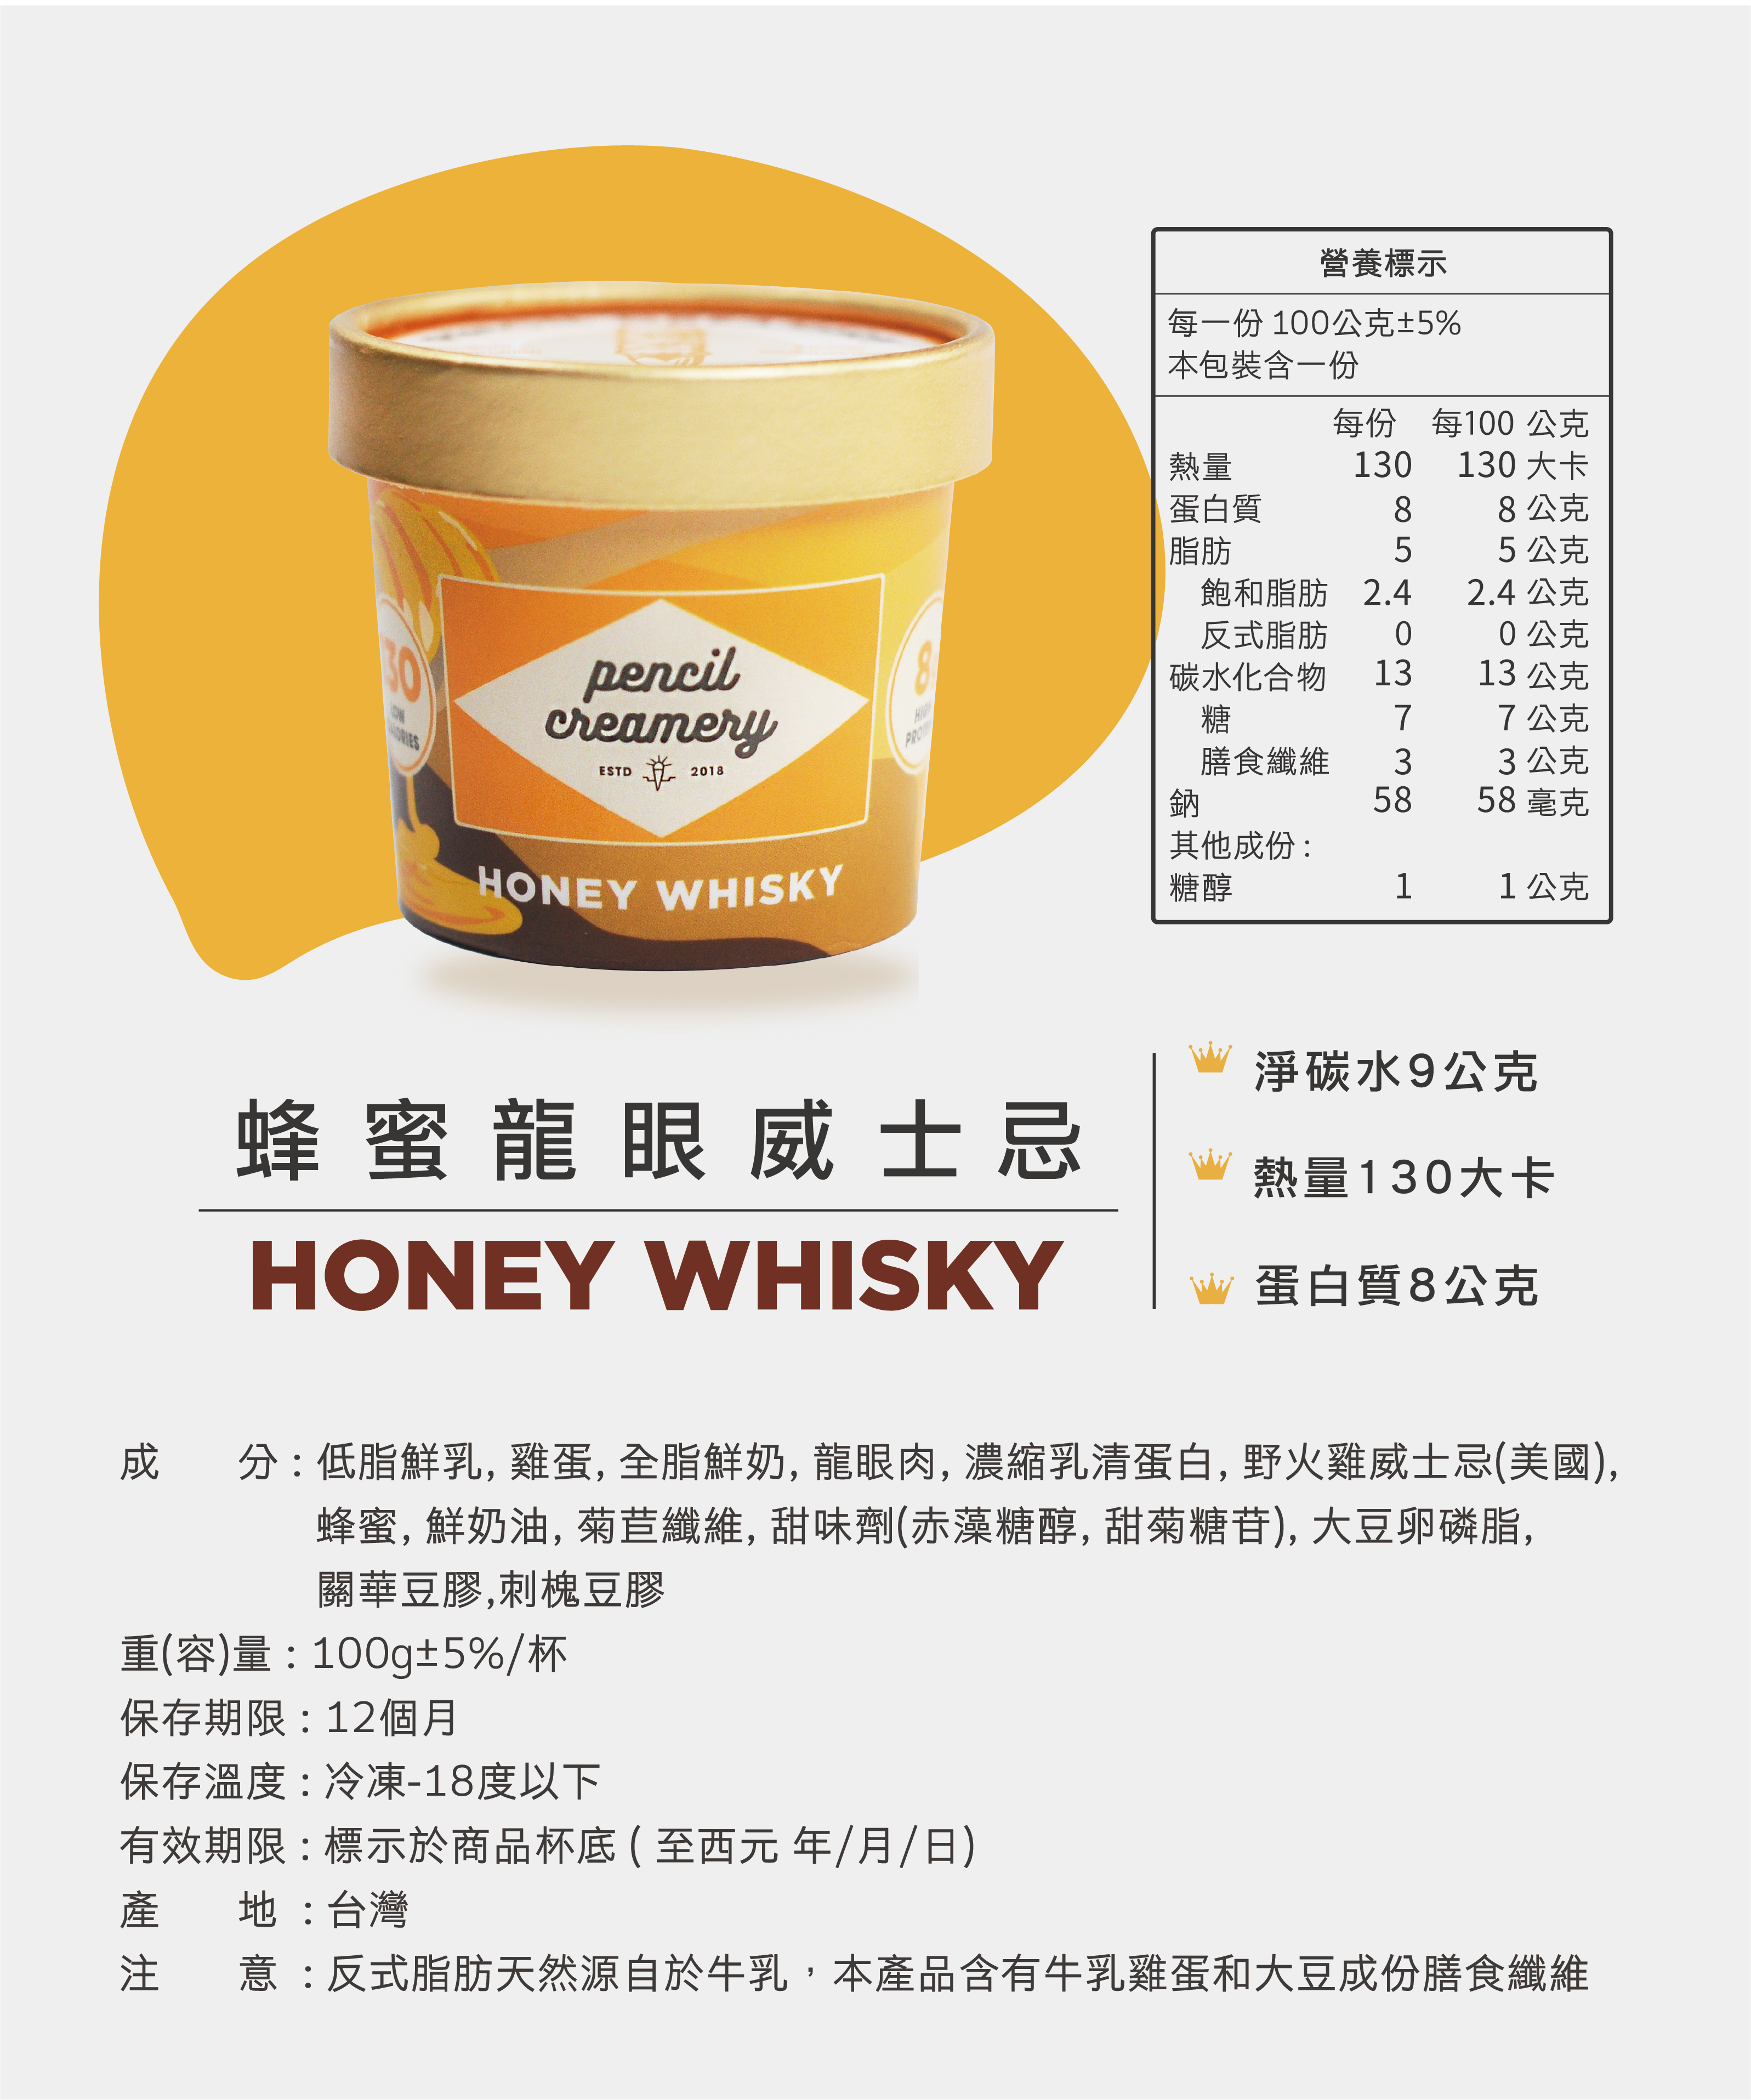 【PENCIL無罪惡點心】專櫃級低脂高蛋白冰淇淋100g 台灣第一款高蛋白冰淇淋